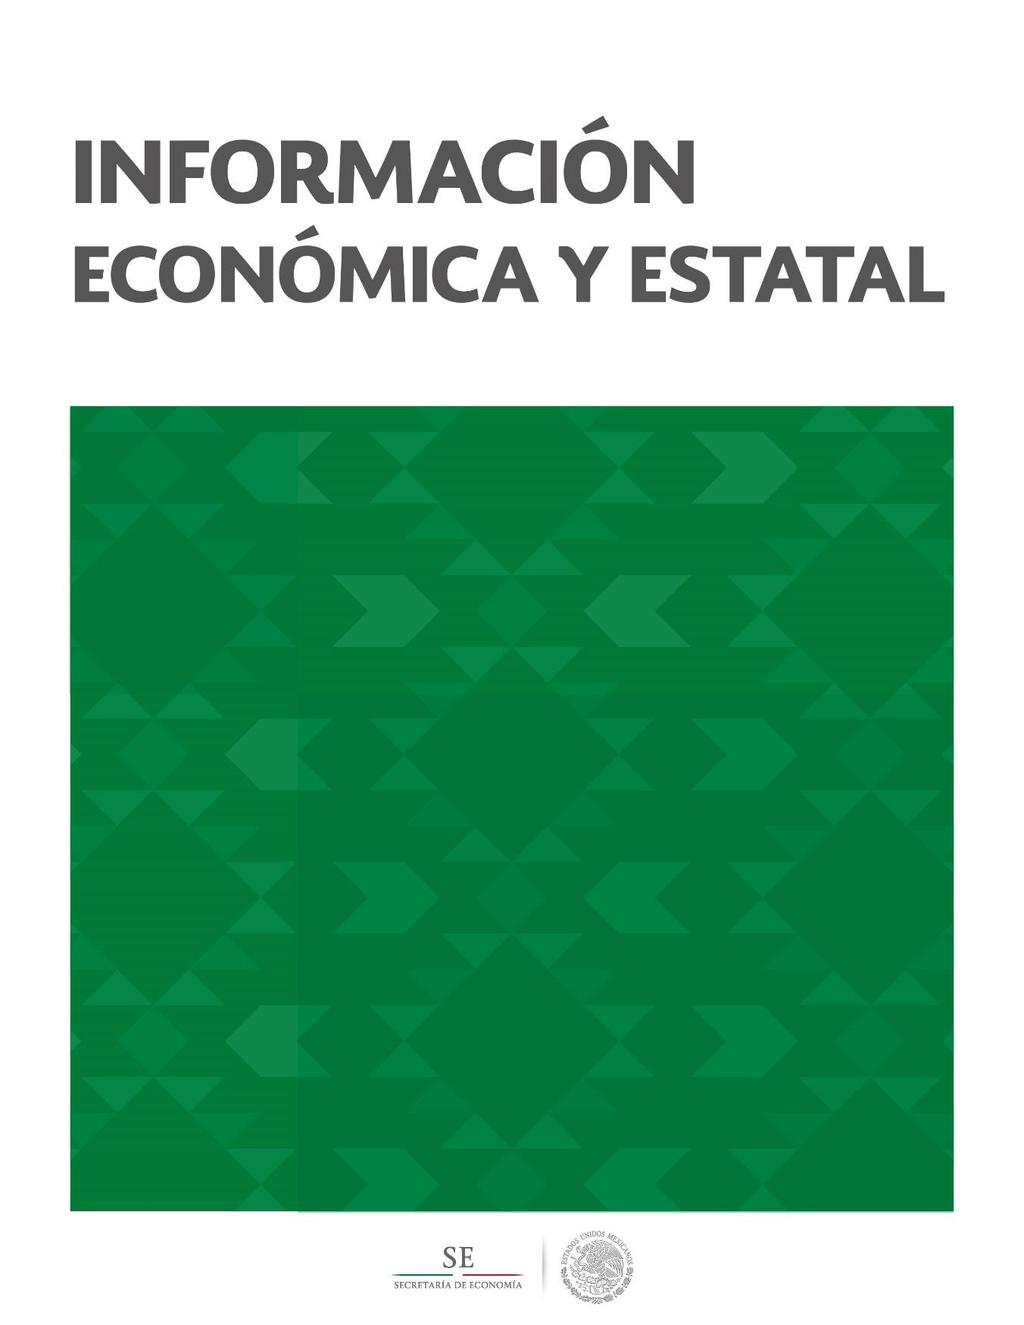 f Baja California Contenido Geografía y Población 2 Actividad Económica 5